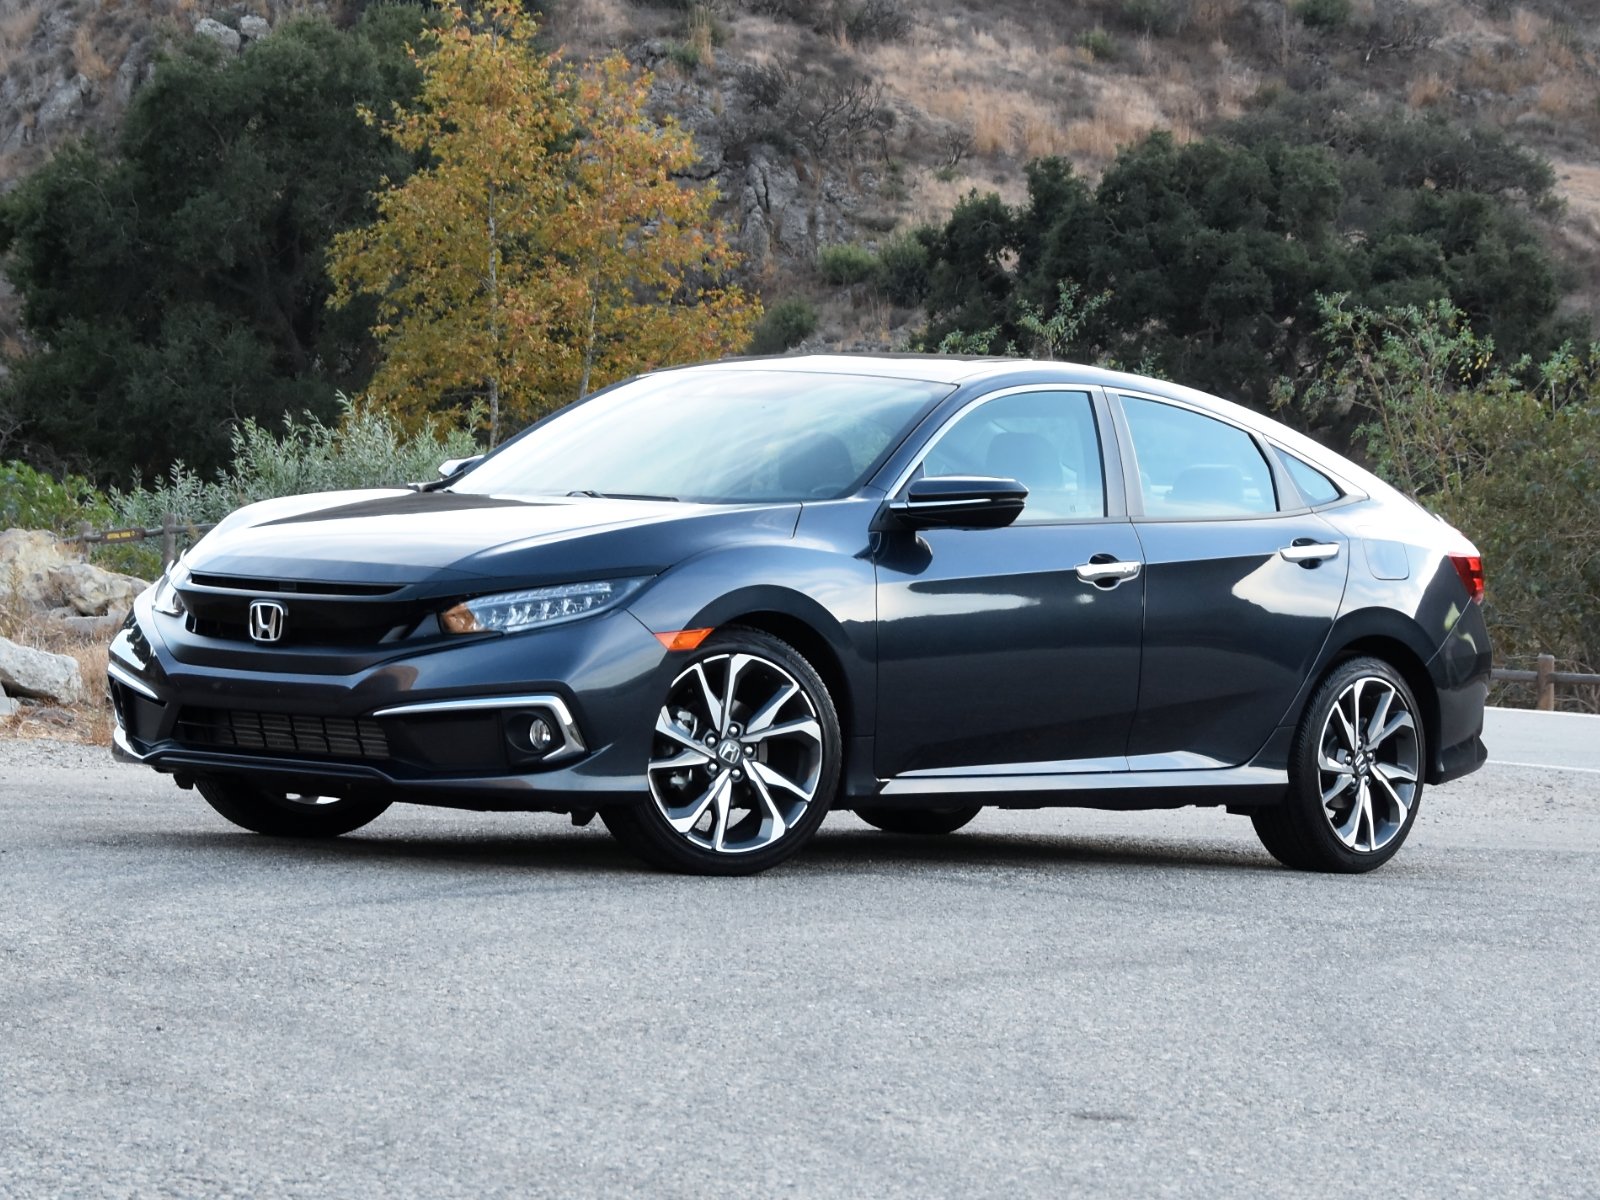 2021 Honda Civic: Prices, Reviews & Pictures - CarGurus